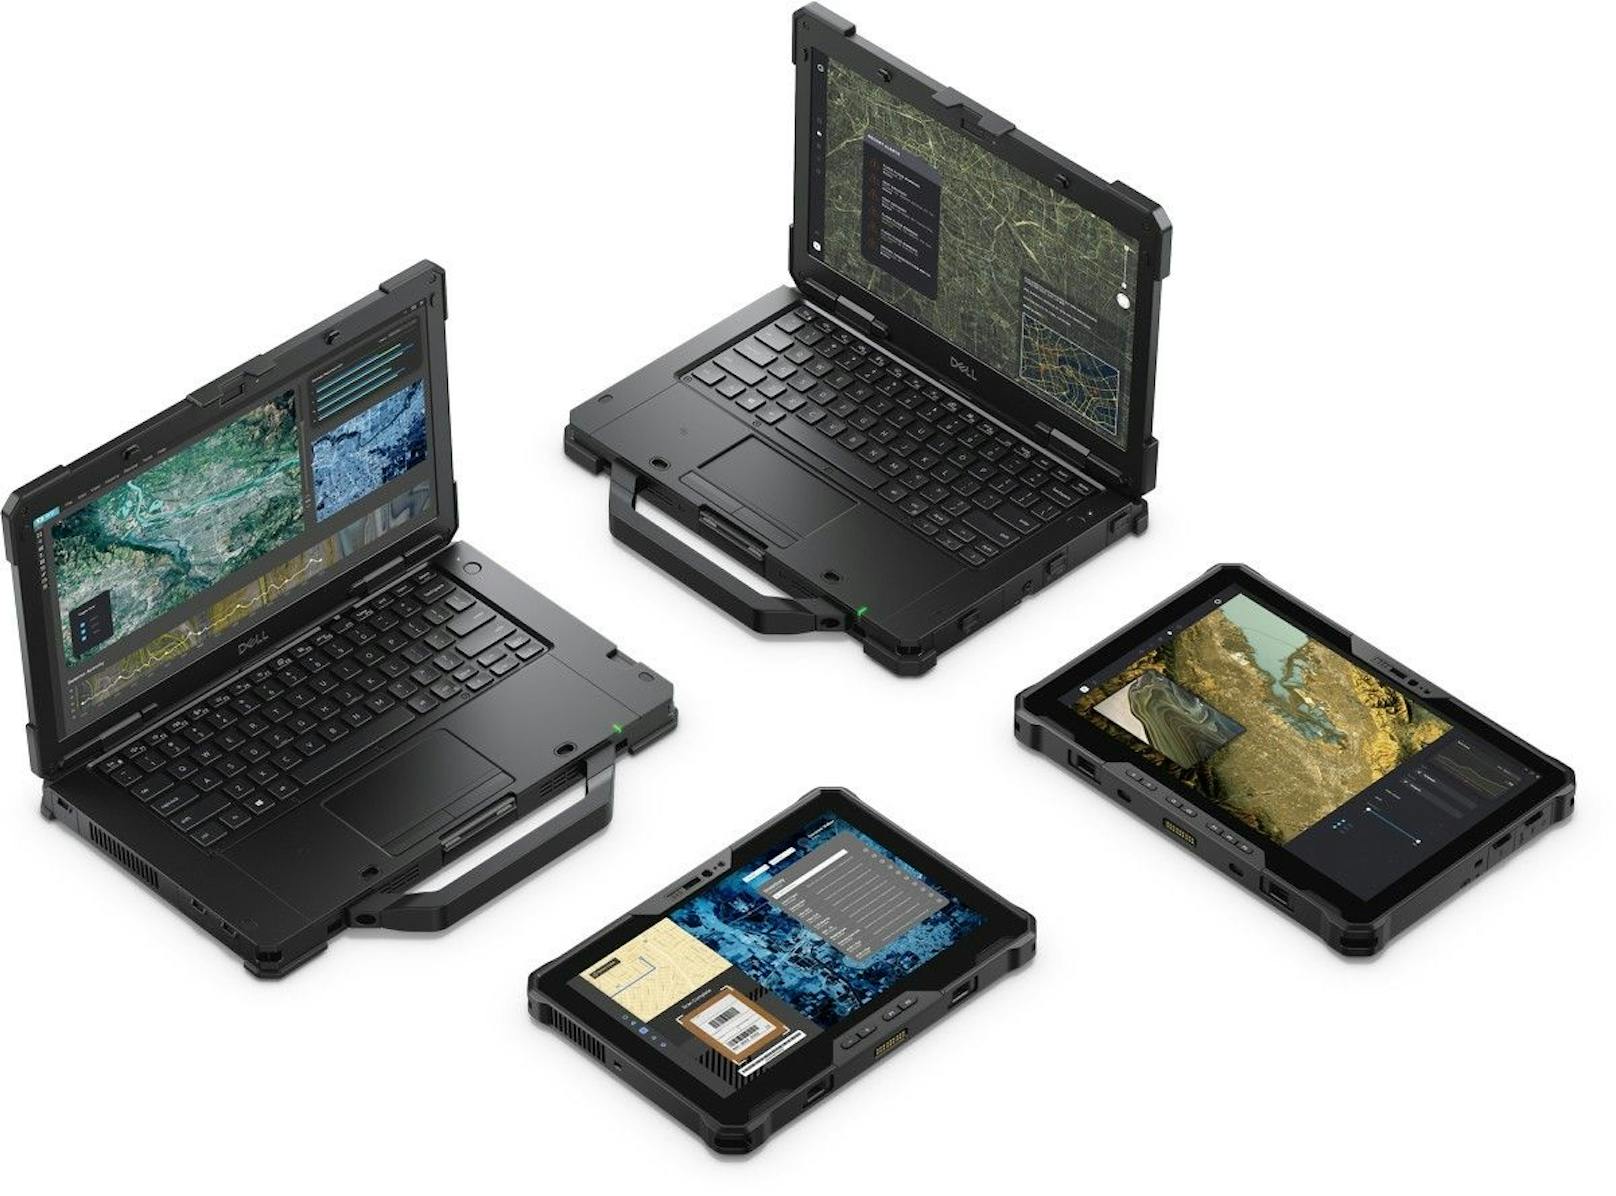 Dell Technologies stellt neues Rugged-Tablet vor.